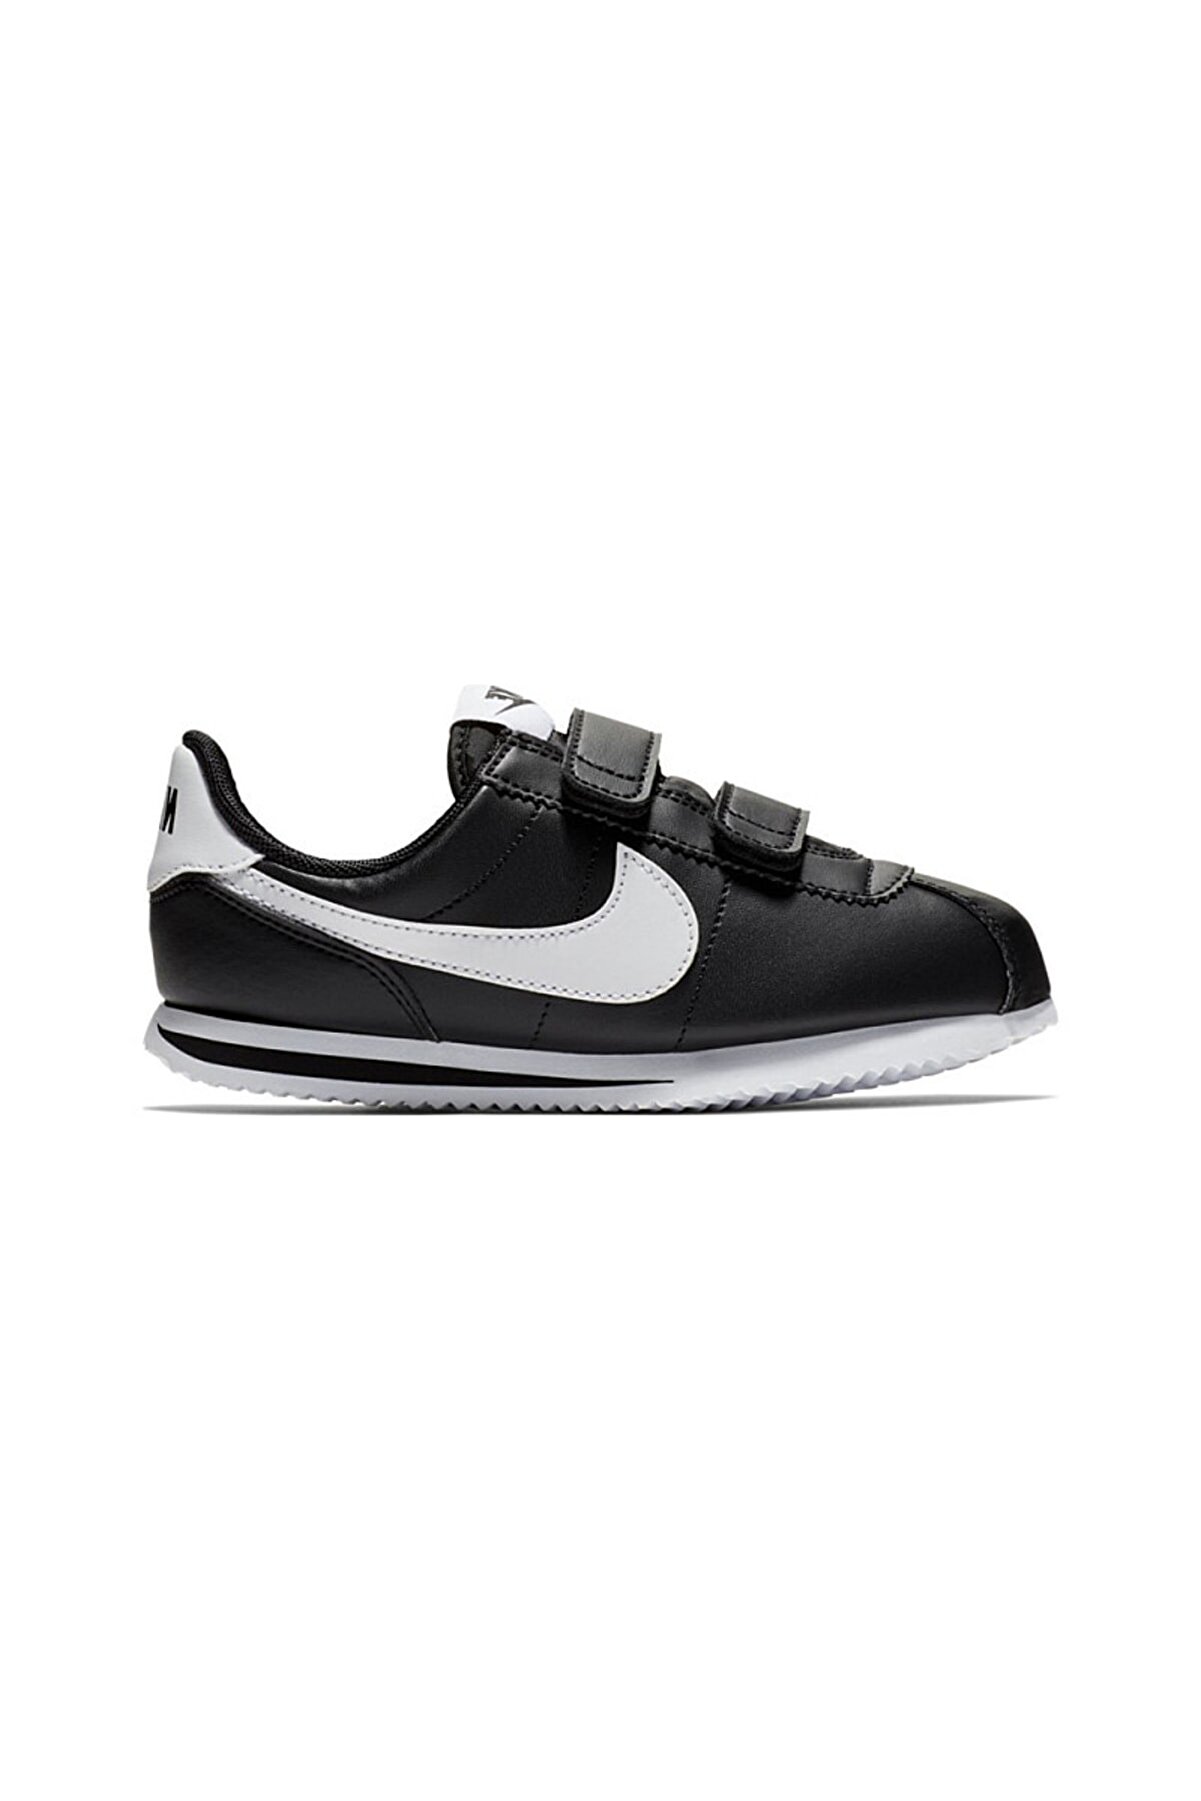 Nike Cortez Basic Sl Çocuk Siyah Spor Ayakkabı 904767-001